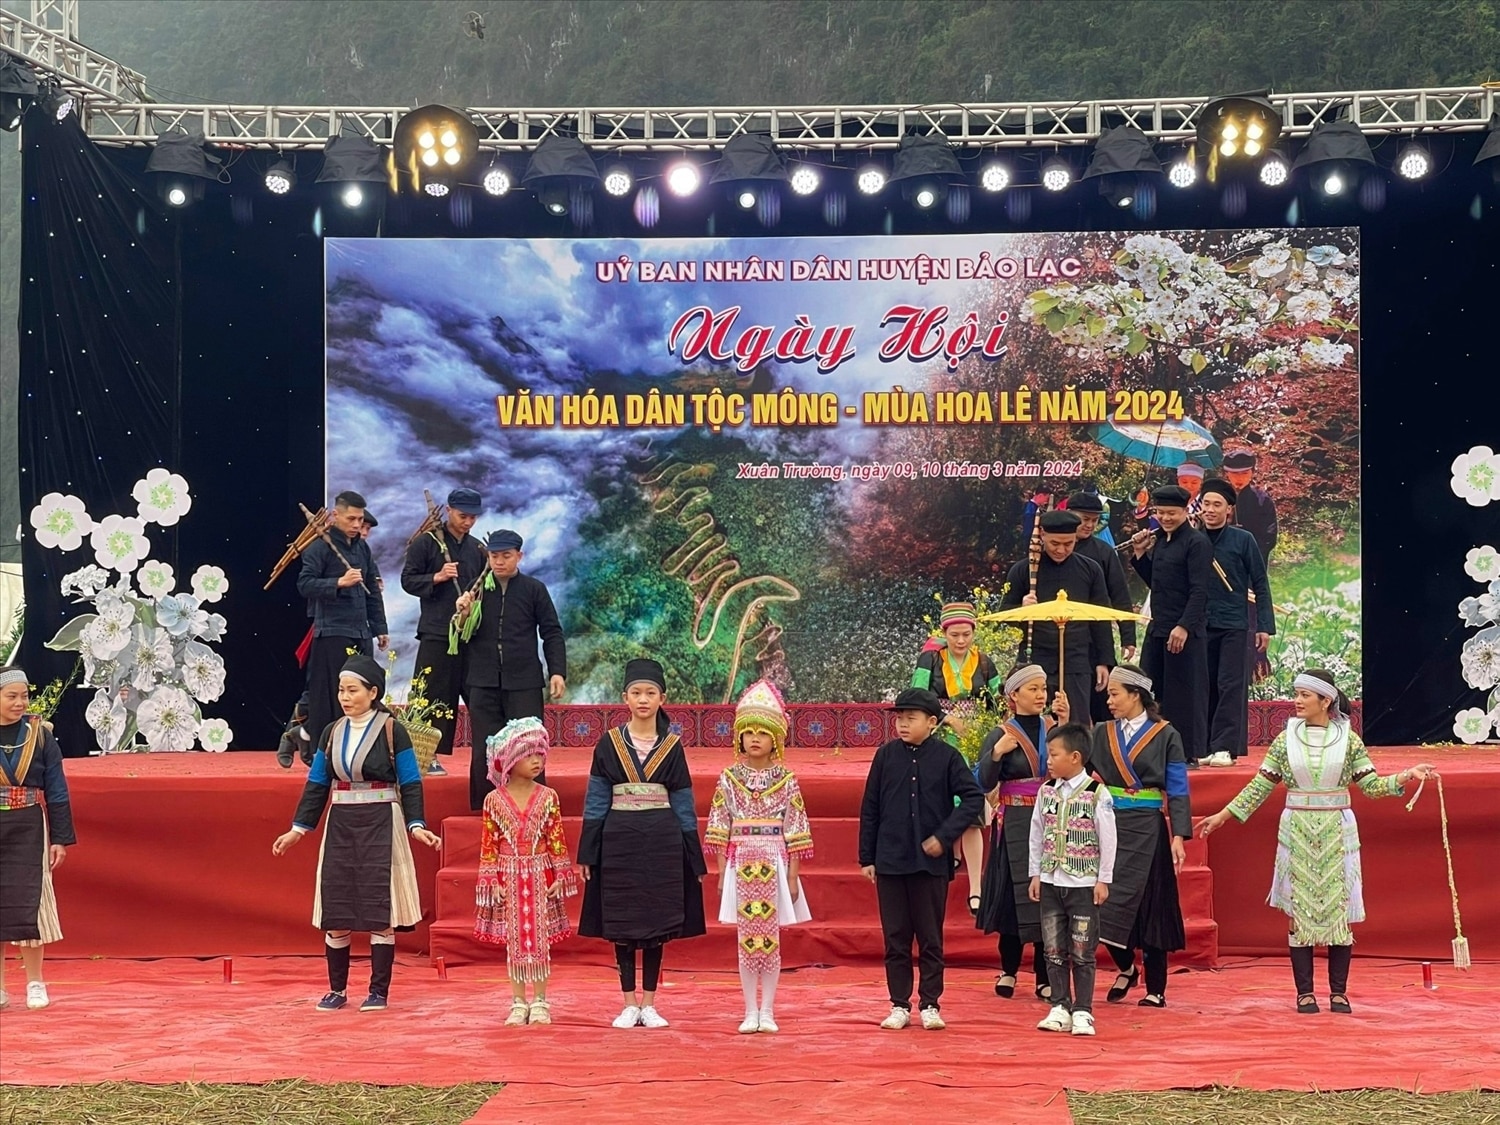 เทศกาลวัฒนธรรมมงปี 2024 จัดโดยเขต Bao Lac ในชุมชนชายแดน Xuan Truong